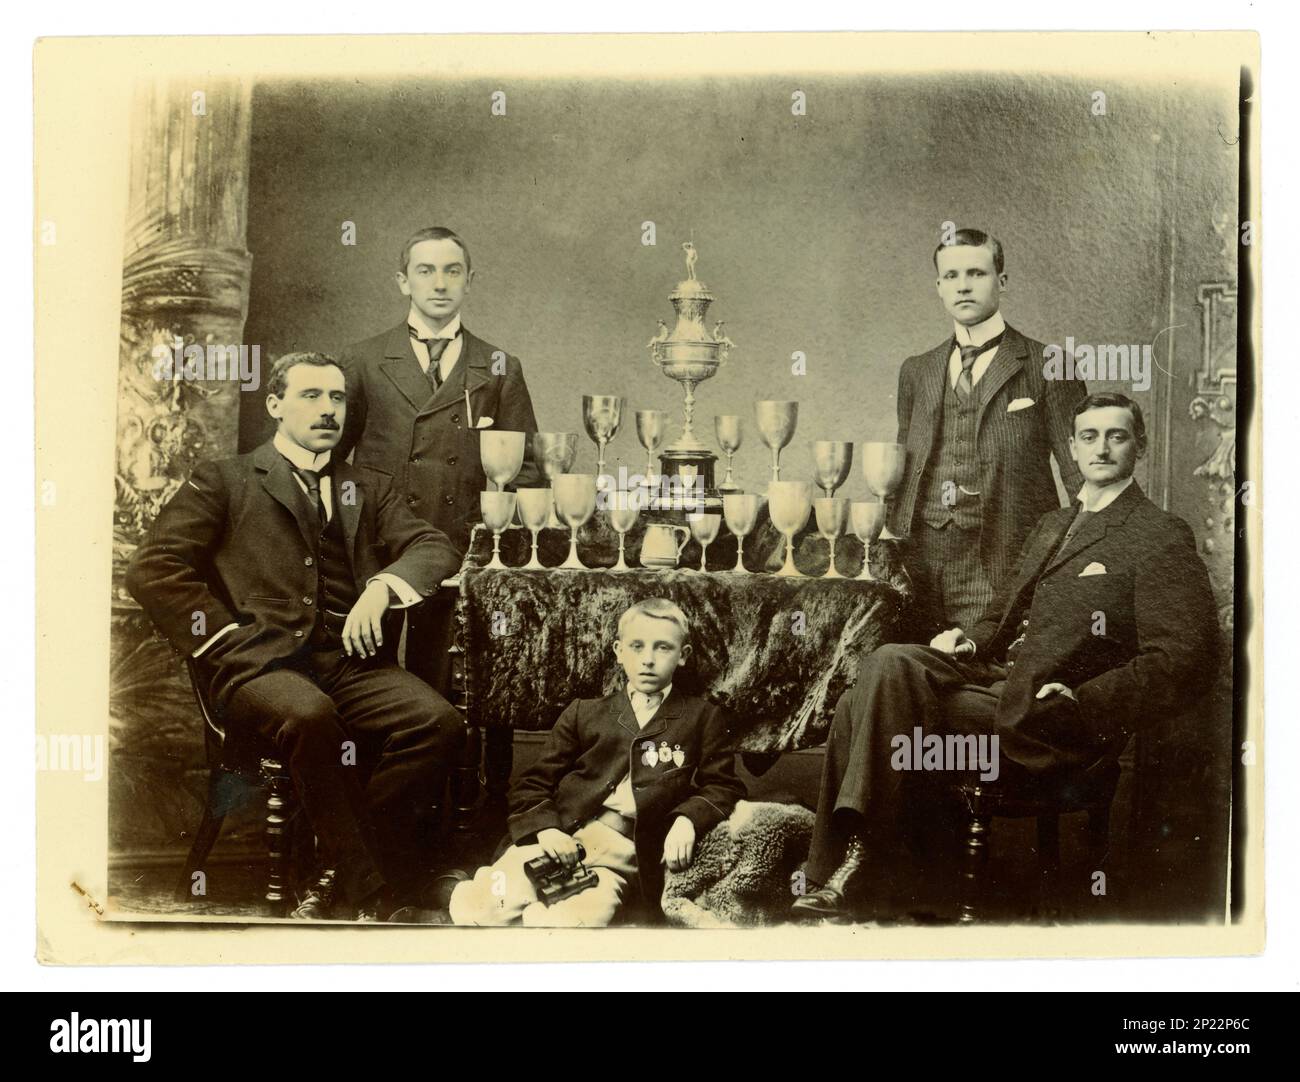 Photo victorienne originale portrait de groupe de gents et d'un enfant. Sur une table, il y a un grand vase de défi de Worcester, / régate trophée pour l'aviron, et d'autres coupes, éventuellement des membres d'une équipe de quatre en boîte. Région de Worcester, Royaume-Uni vers 1897-1899. Banque D'Images